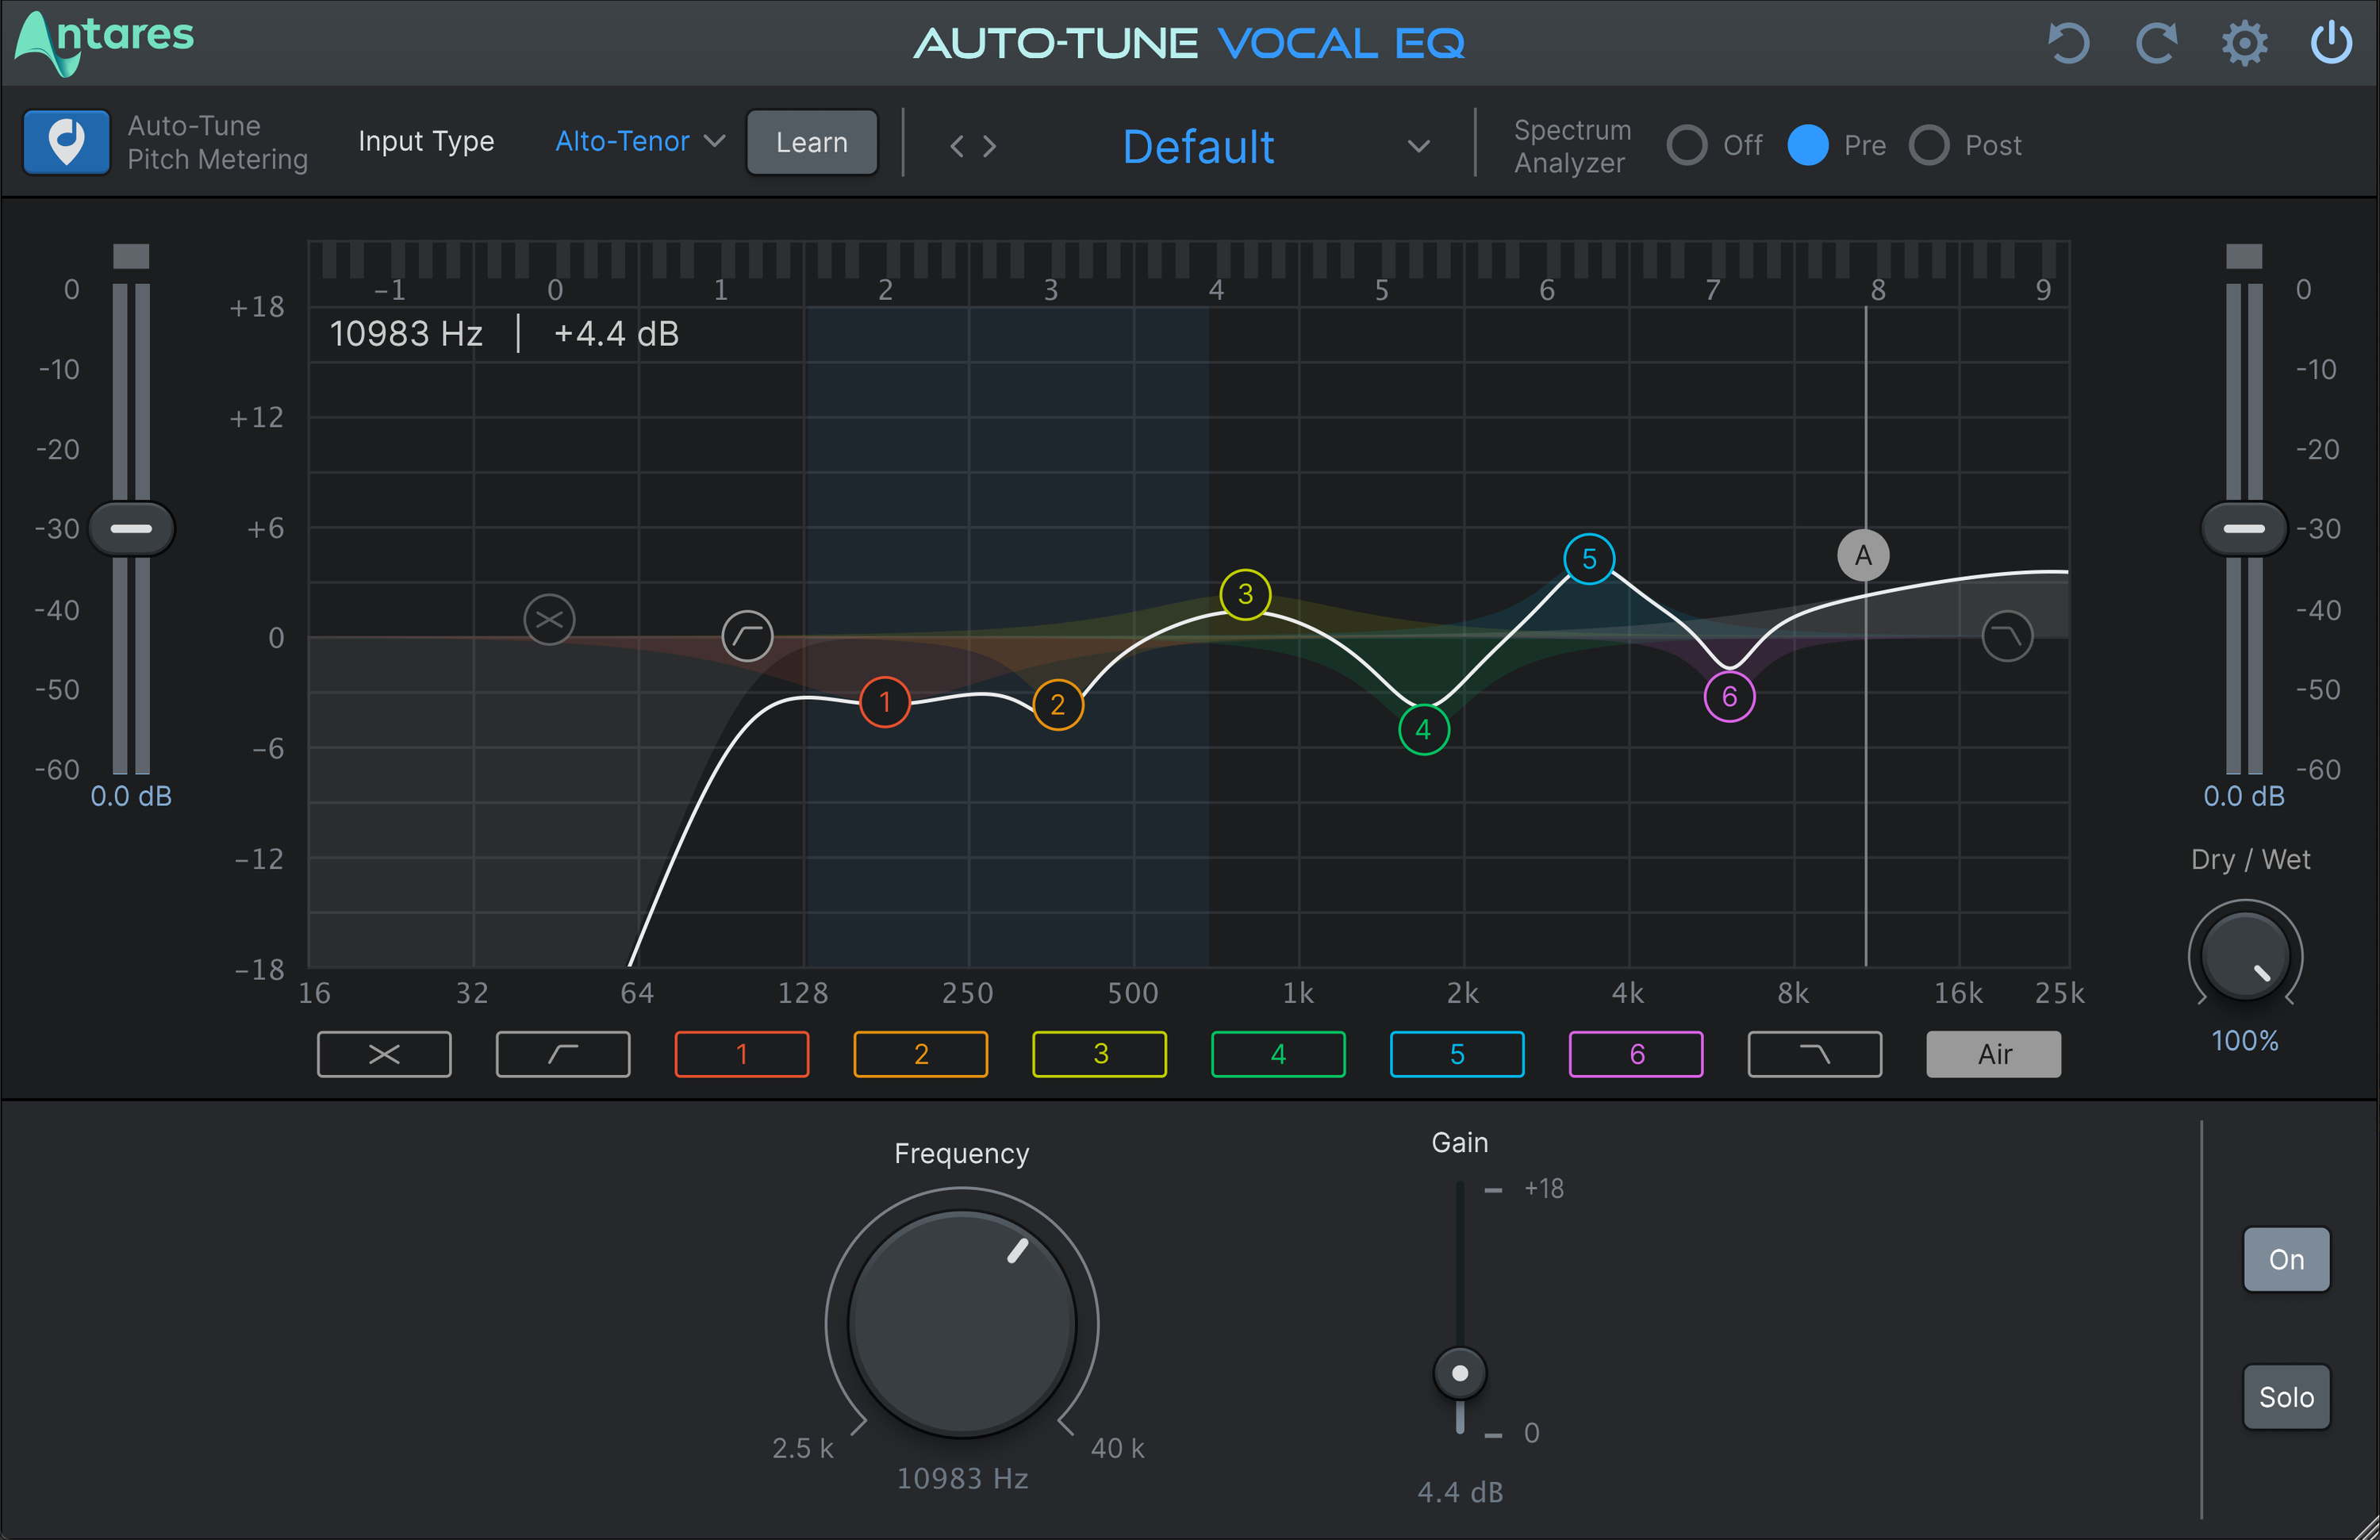 Bundled Item: Antares Auto-Tune Vocal EQ Plug-in